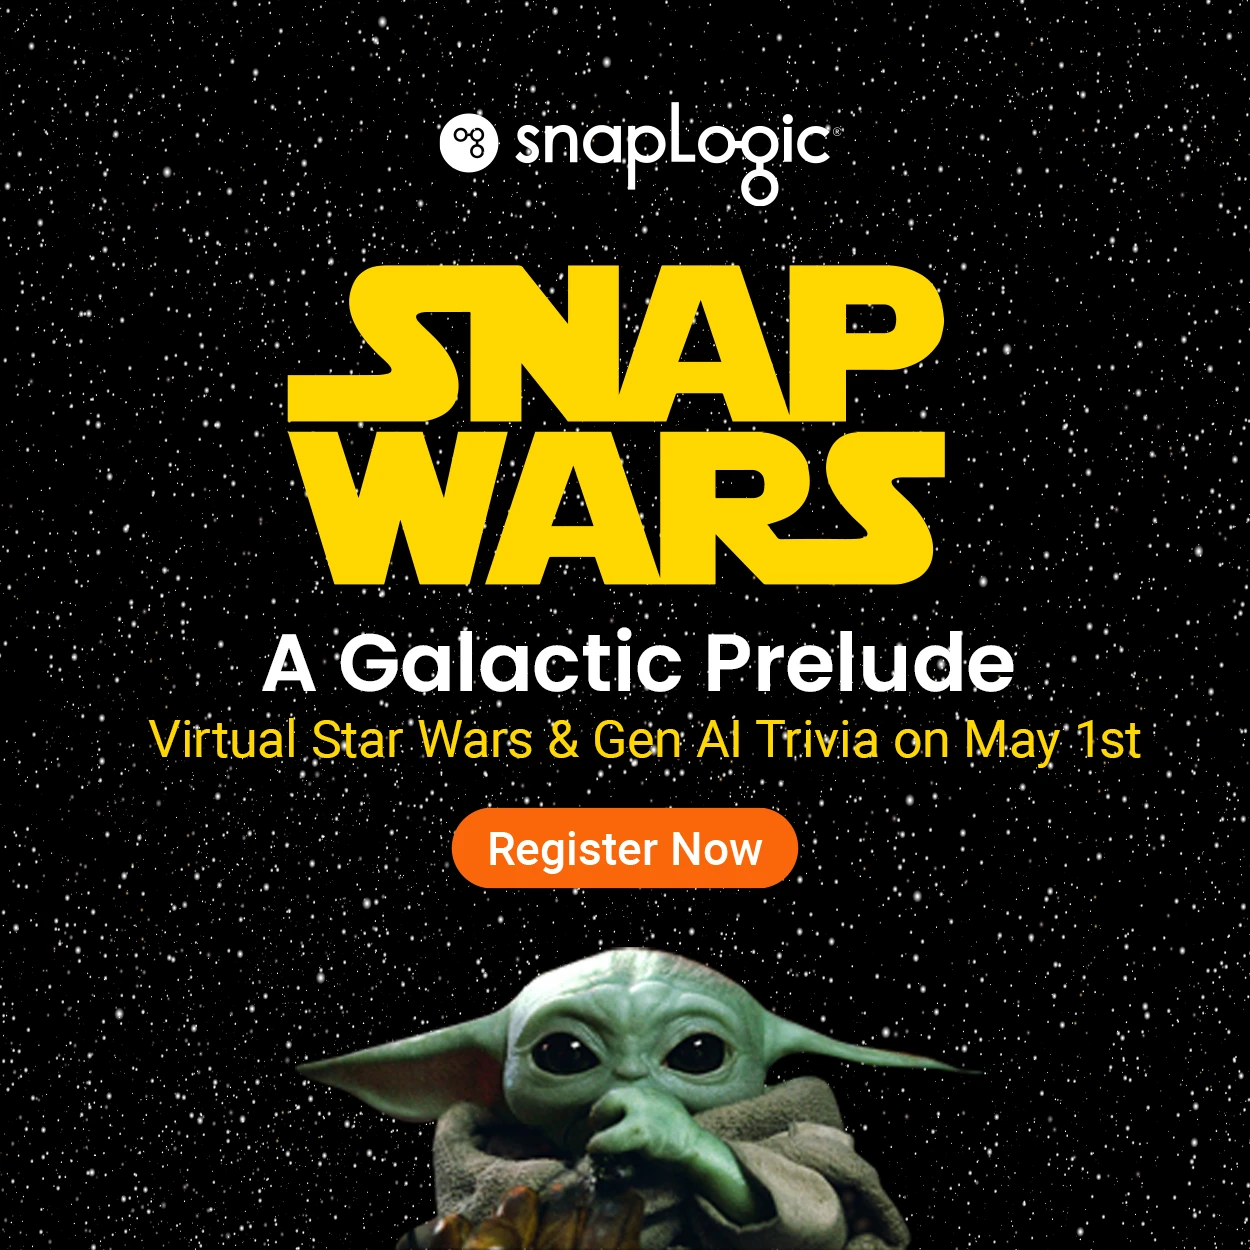 SnapWars Un preludio galattico: Guerre Stellari virtuali e Gen AI Trivia il 1° maggio